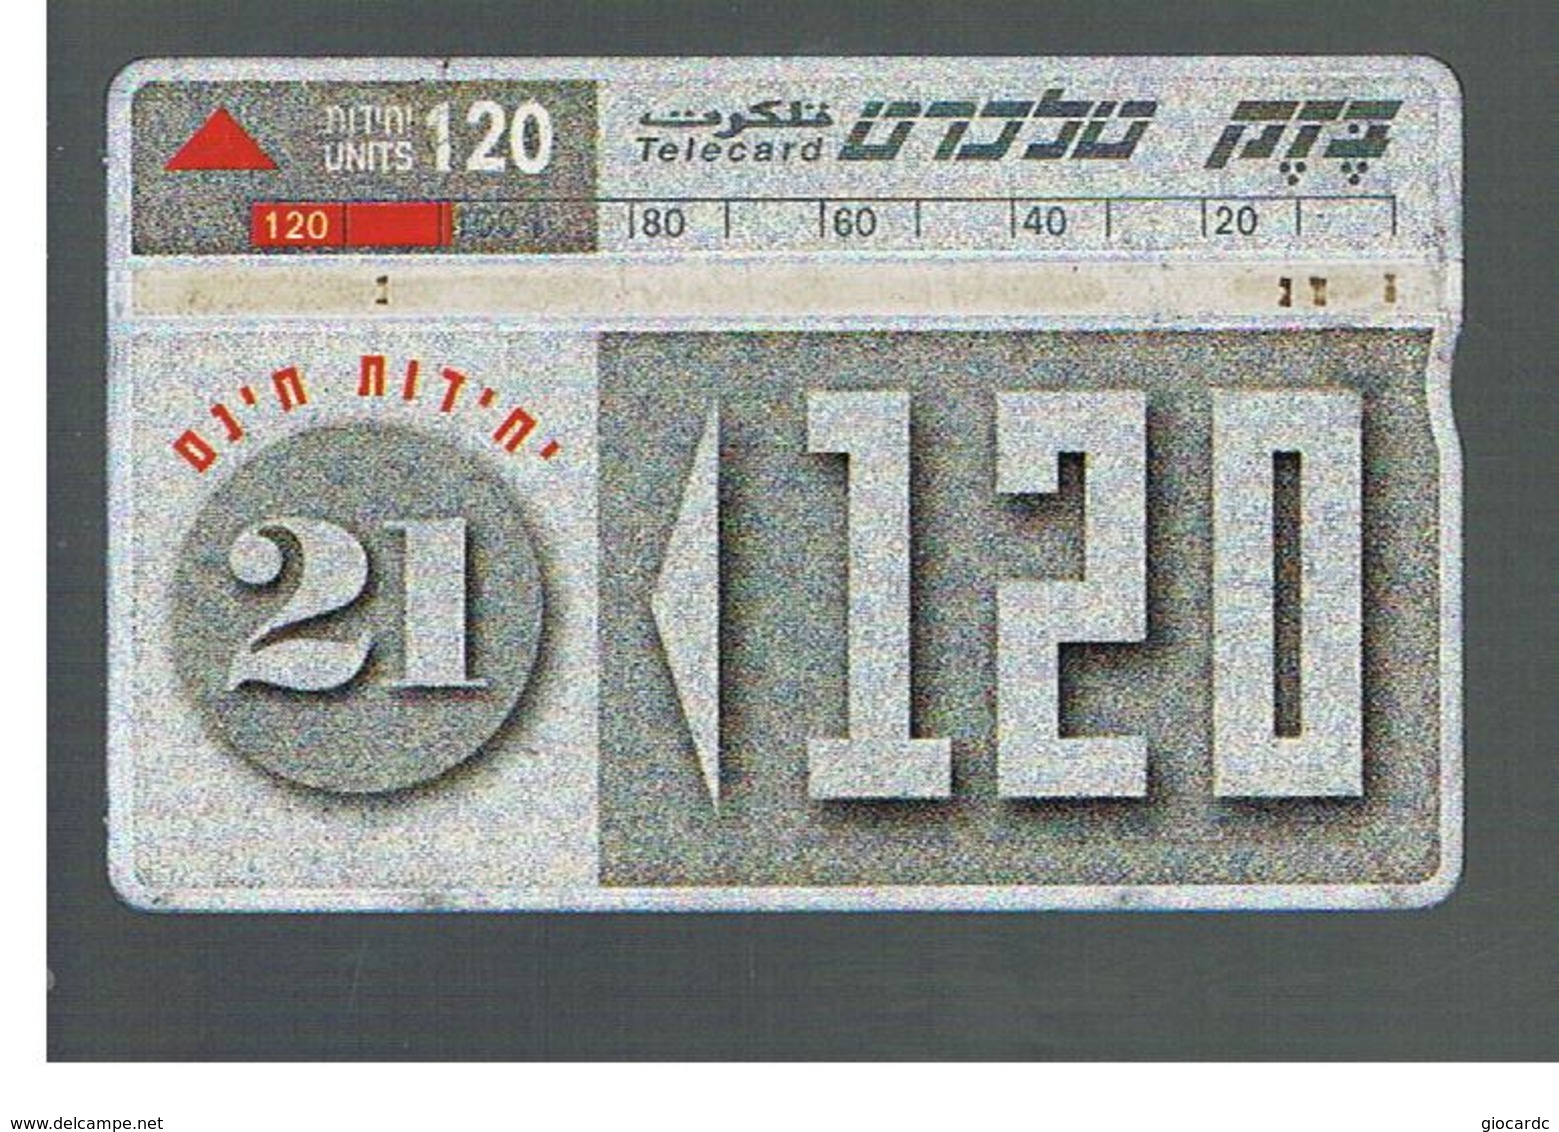 ISRAELE (ISRAEL) -   1995 SAVING CARD 120  - USED  -  RIF. 10874 - Israele